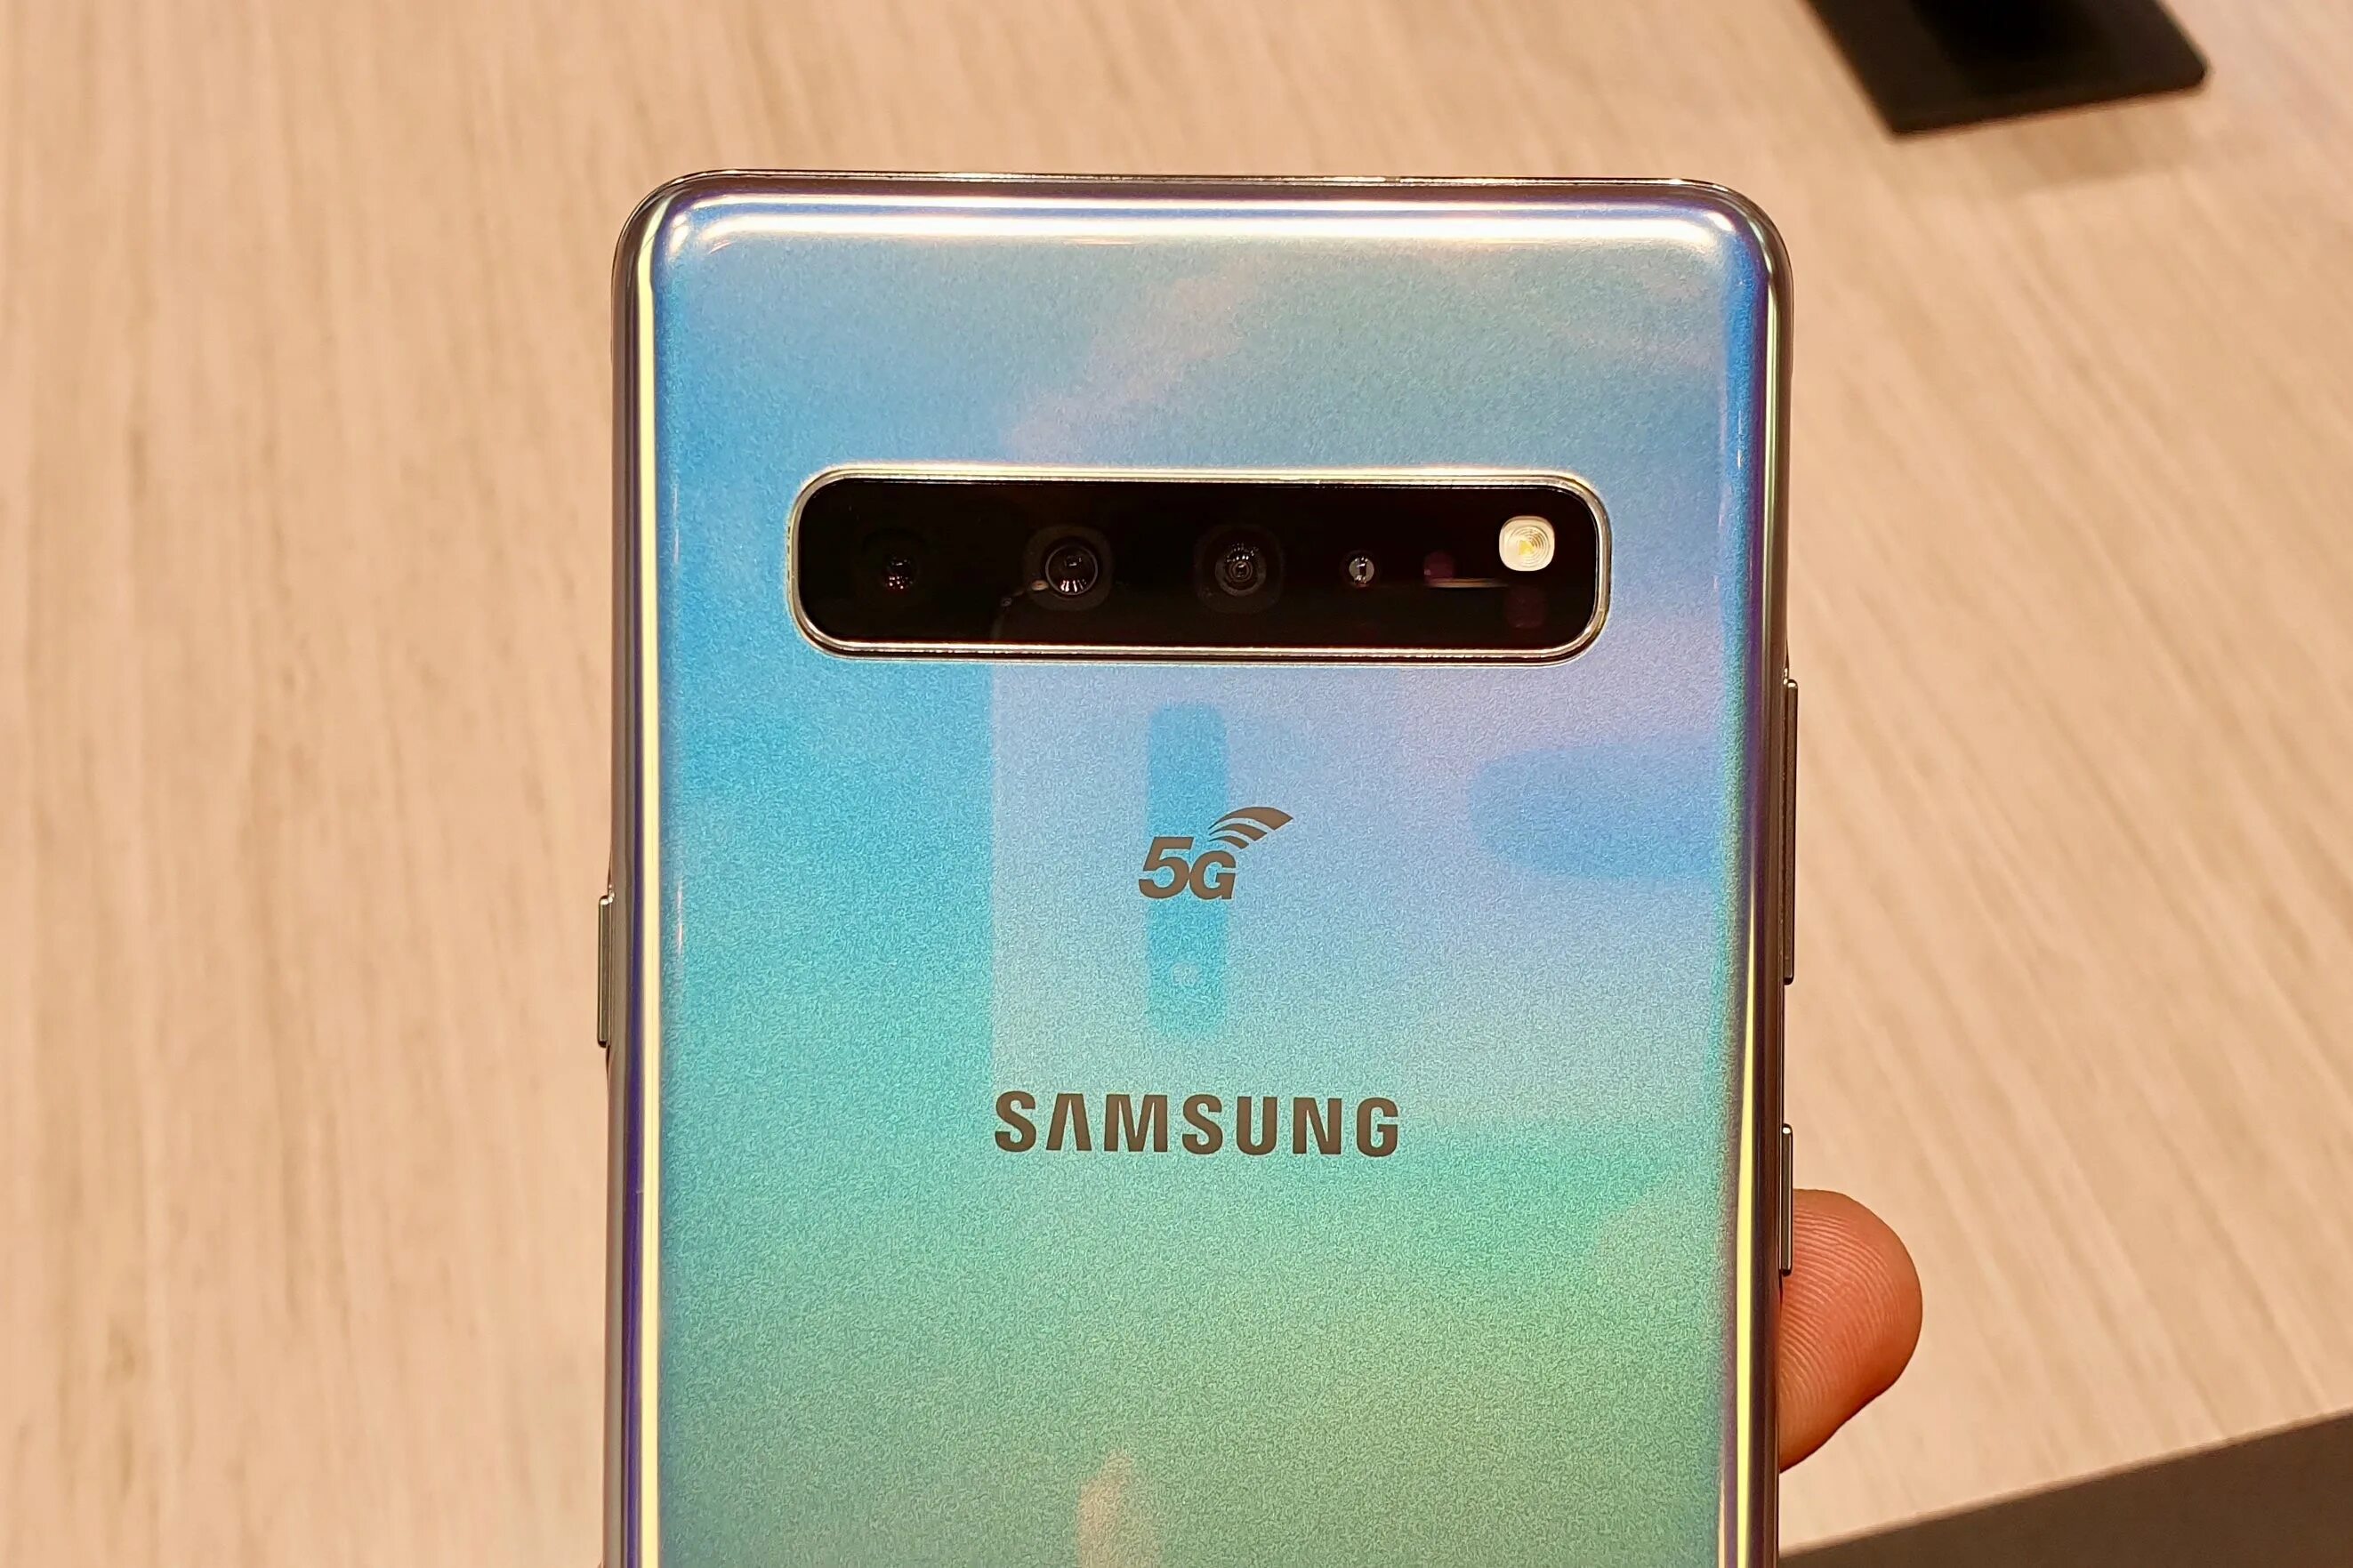 Самсунг галакси s10 5g. Samsung Galaxy s10e 5g. Samsung Galaxy s10+ 5g. Самсунг галакси с 10 5g.